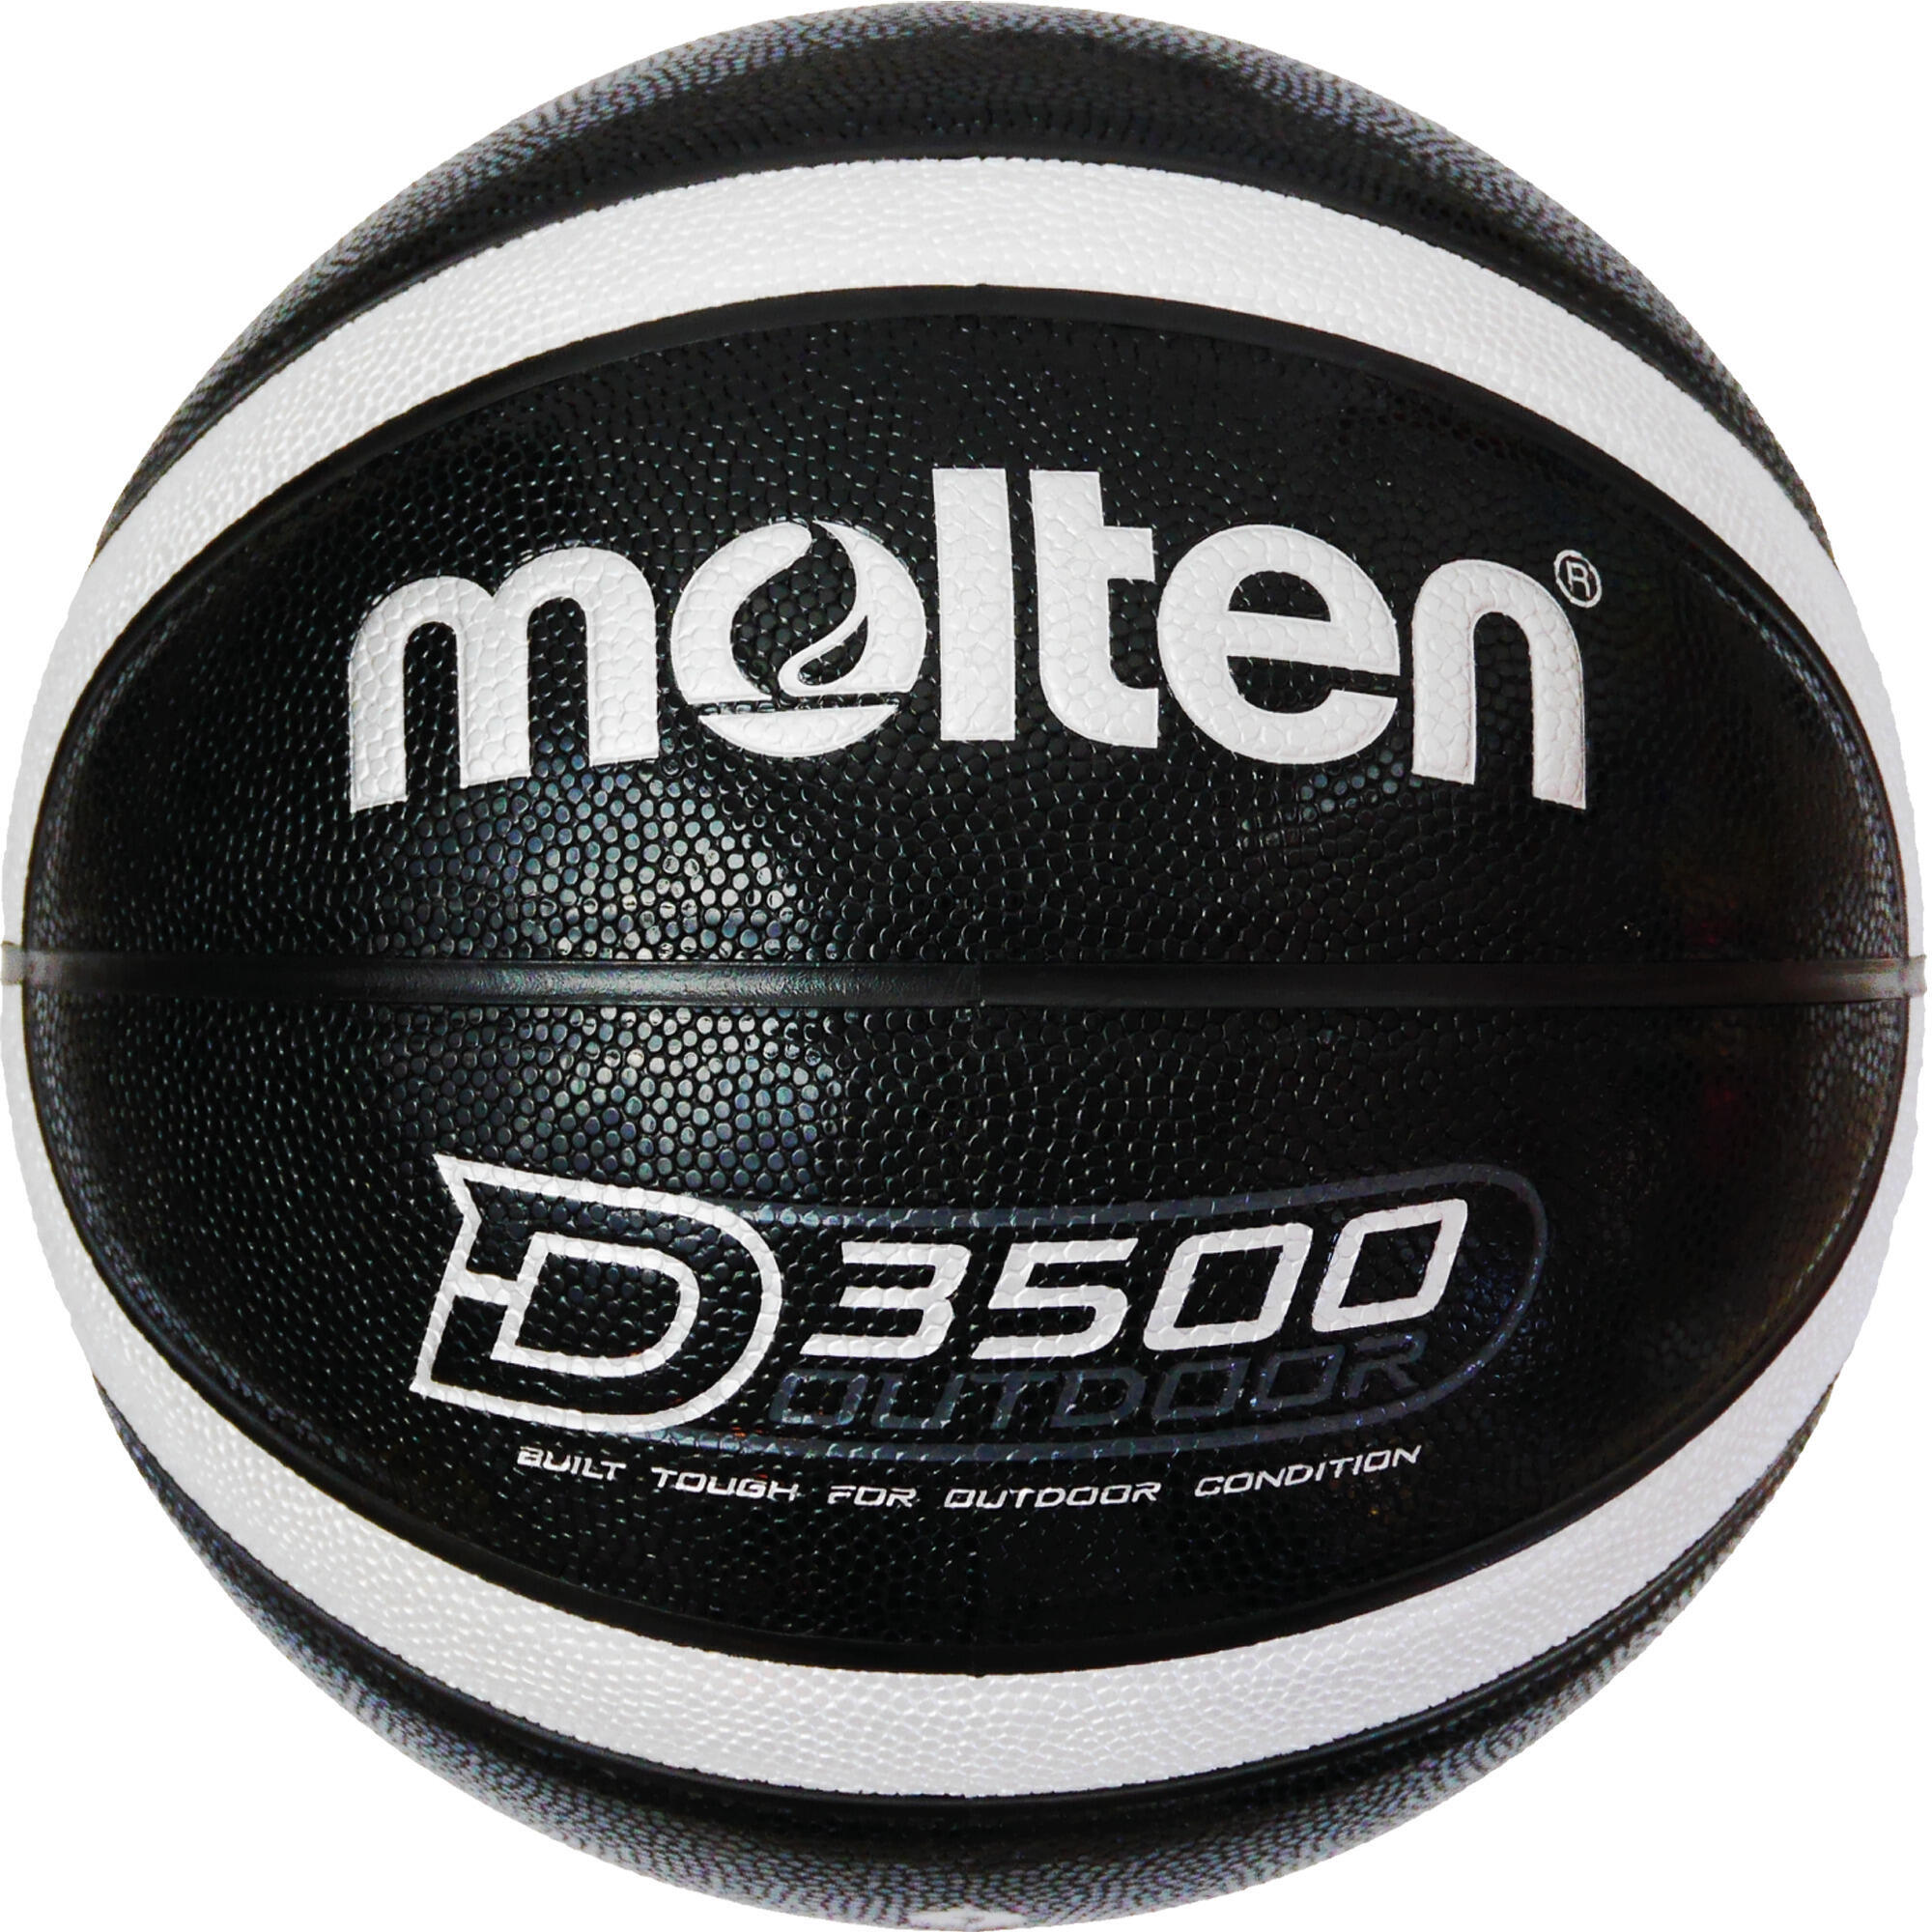 Расплавленный баскетбольный мяч на открытом воздухе, размер 7 MOLTEN, черное серебро